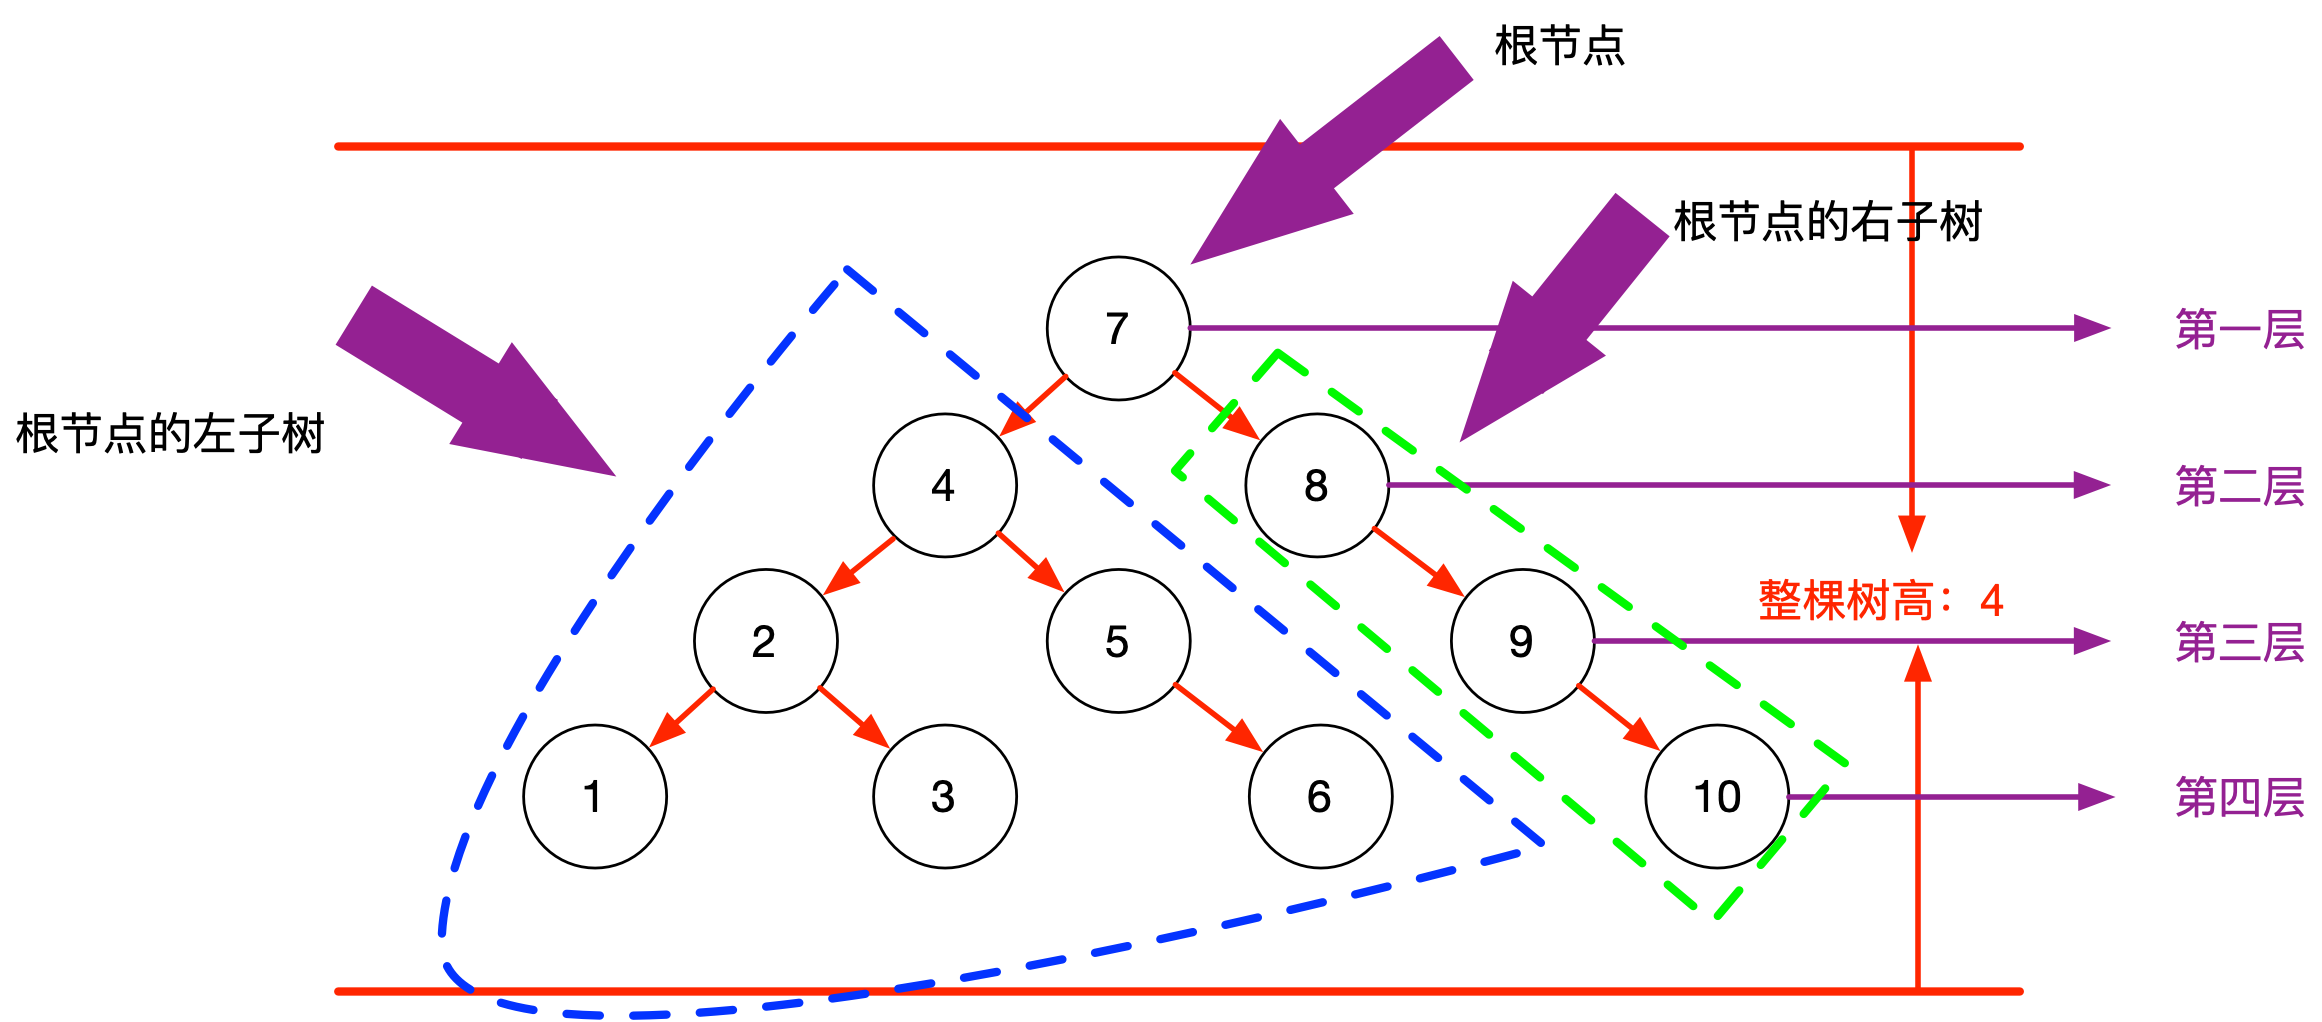 数据结构-二叉树1.png